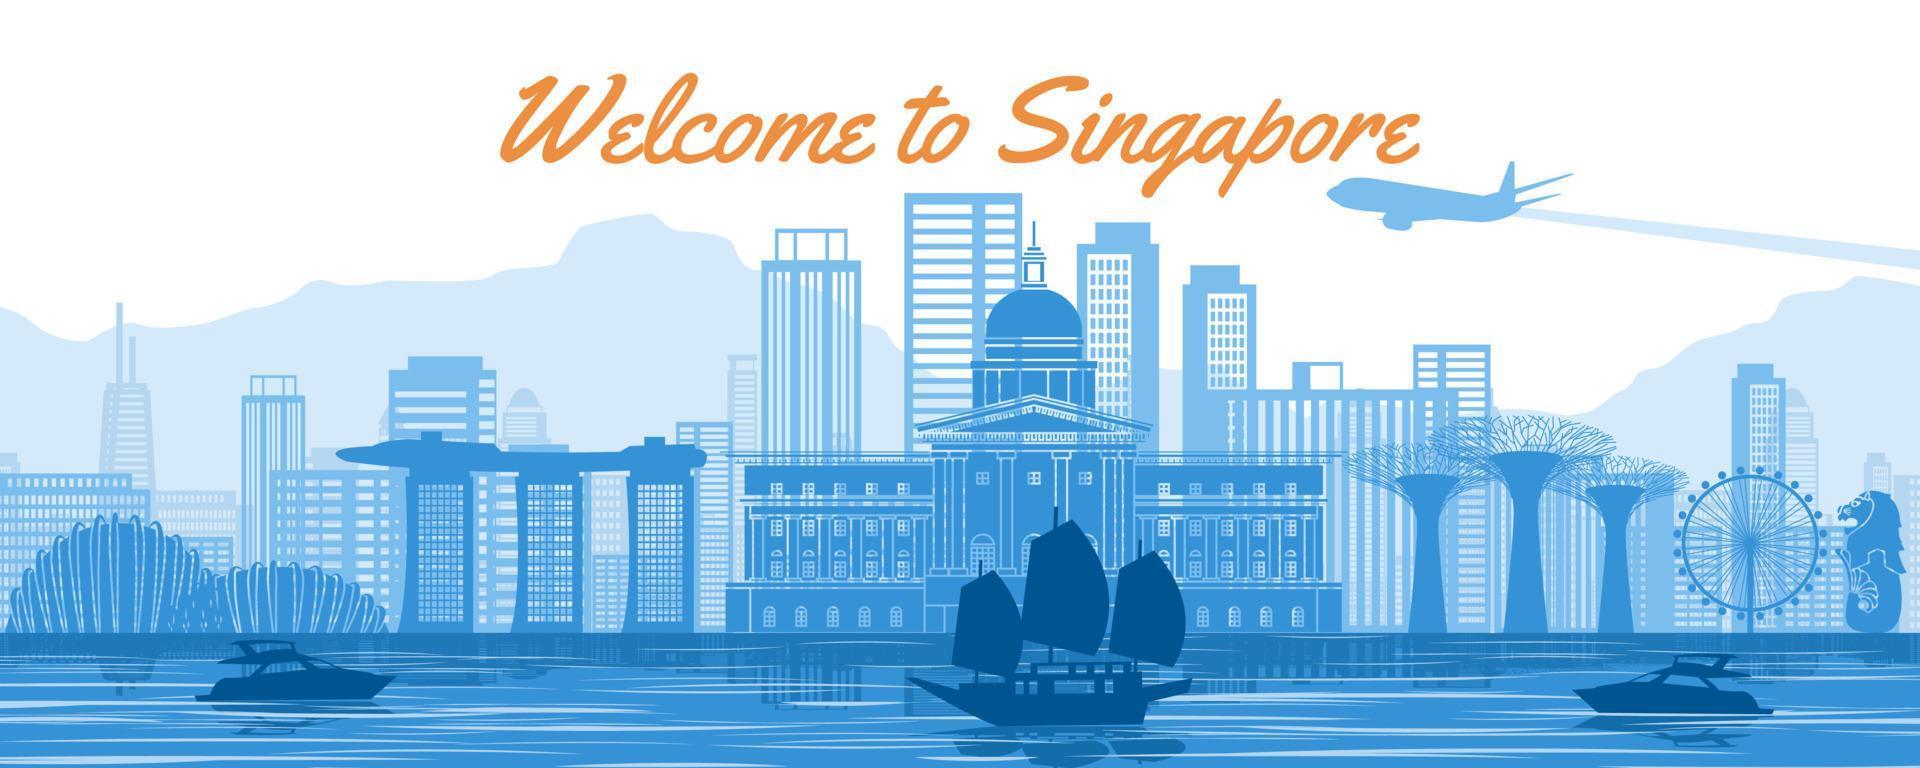 Singapur berühmtes Wahrzeichen mit blauem und weißem Farbdesign vektor